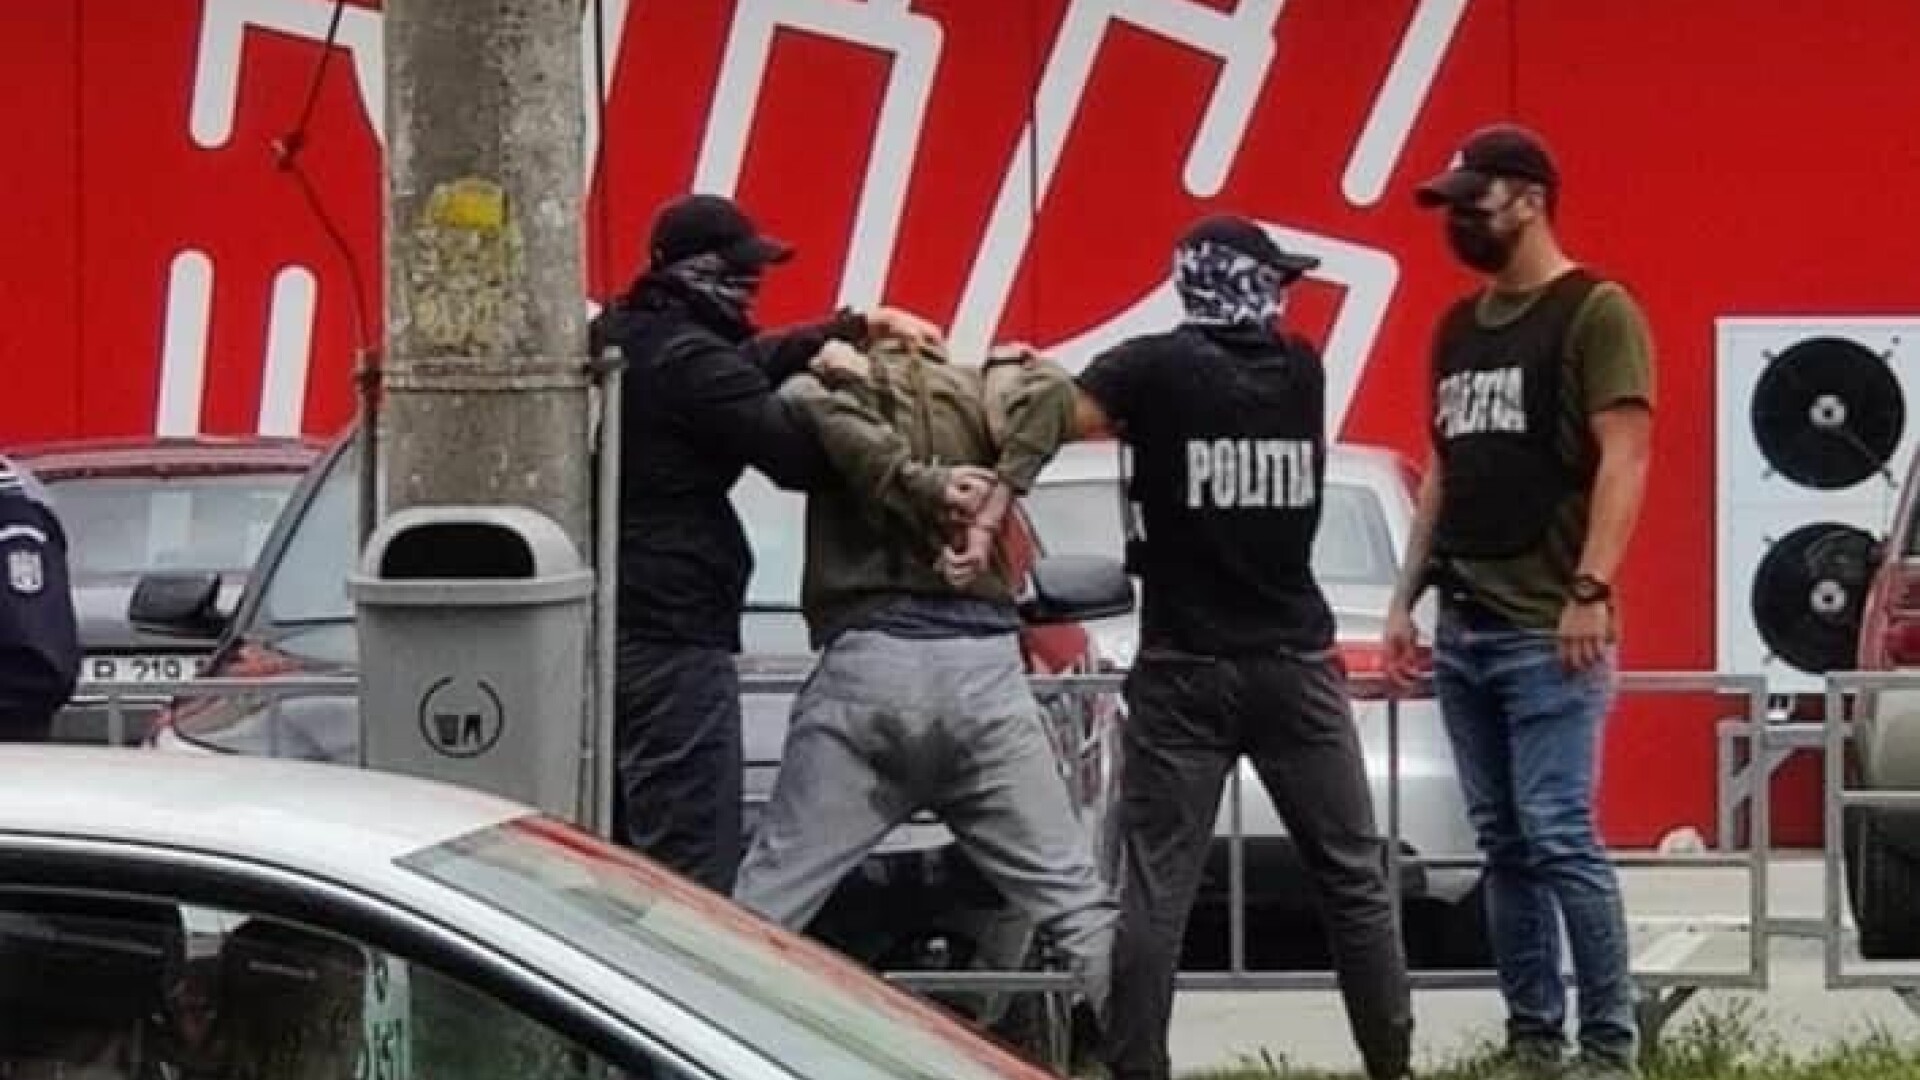 Un traficant de droguri s-a scăpat pe el când a fost încătușat de polițiști, în Cluj-Napoca